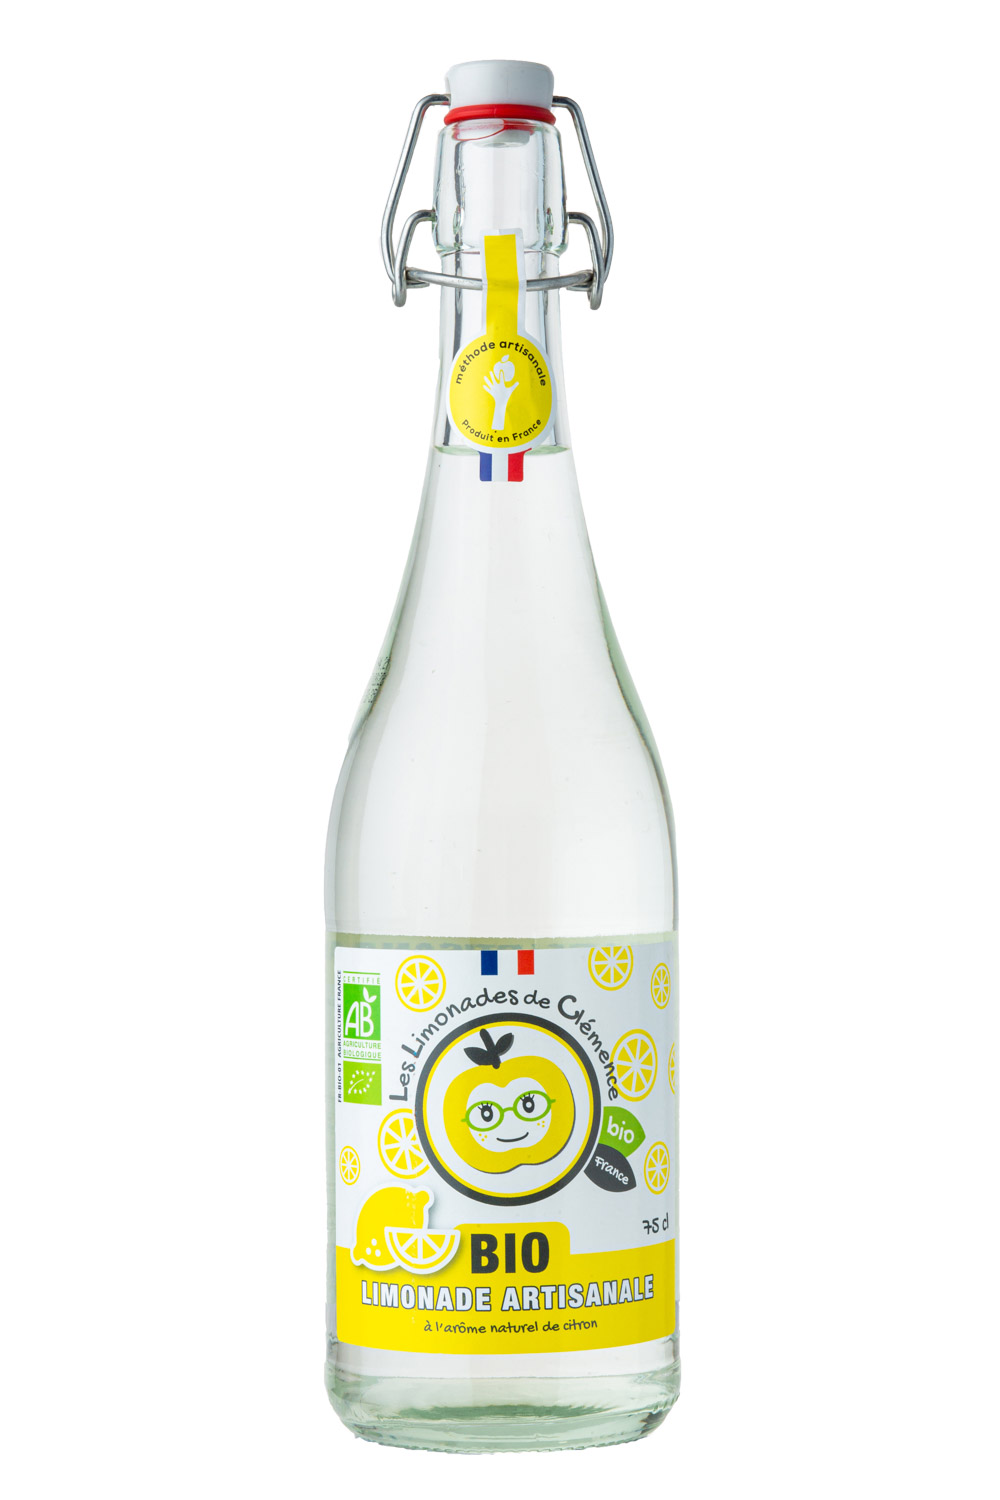 Photographie de bouteille de limonade sur fond blanc